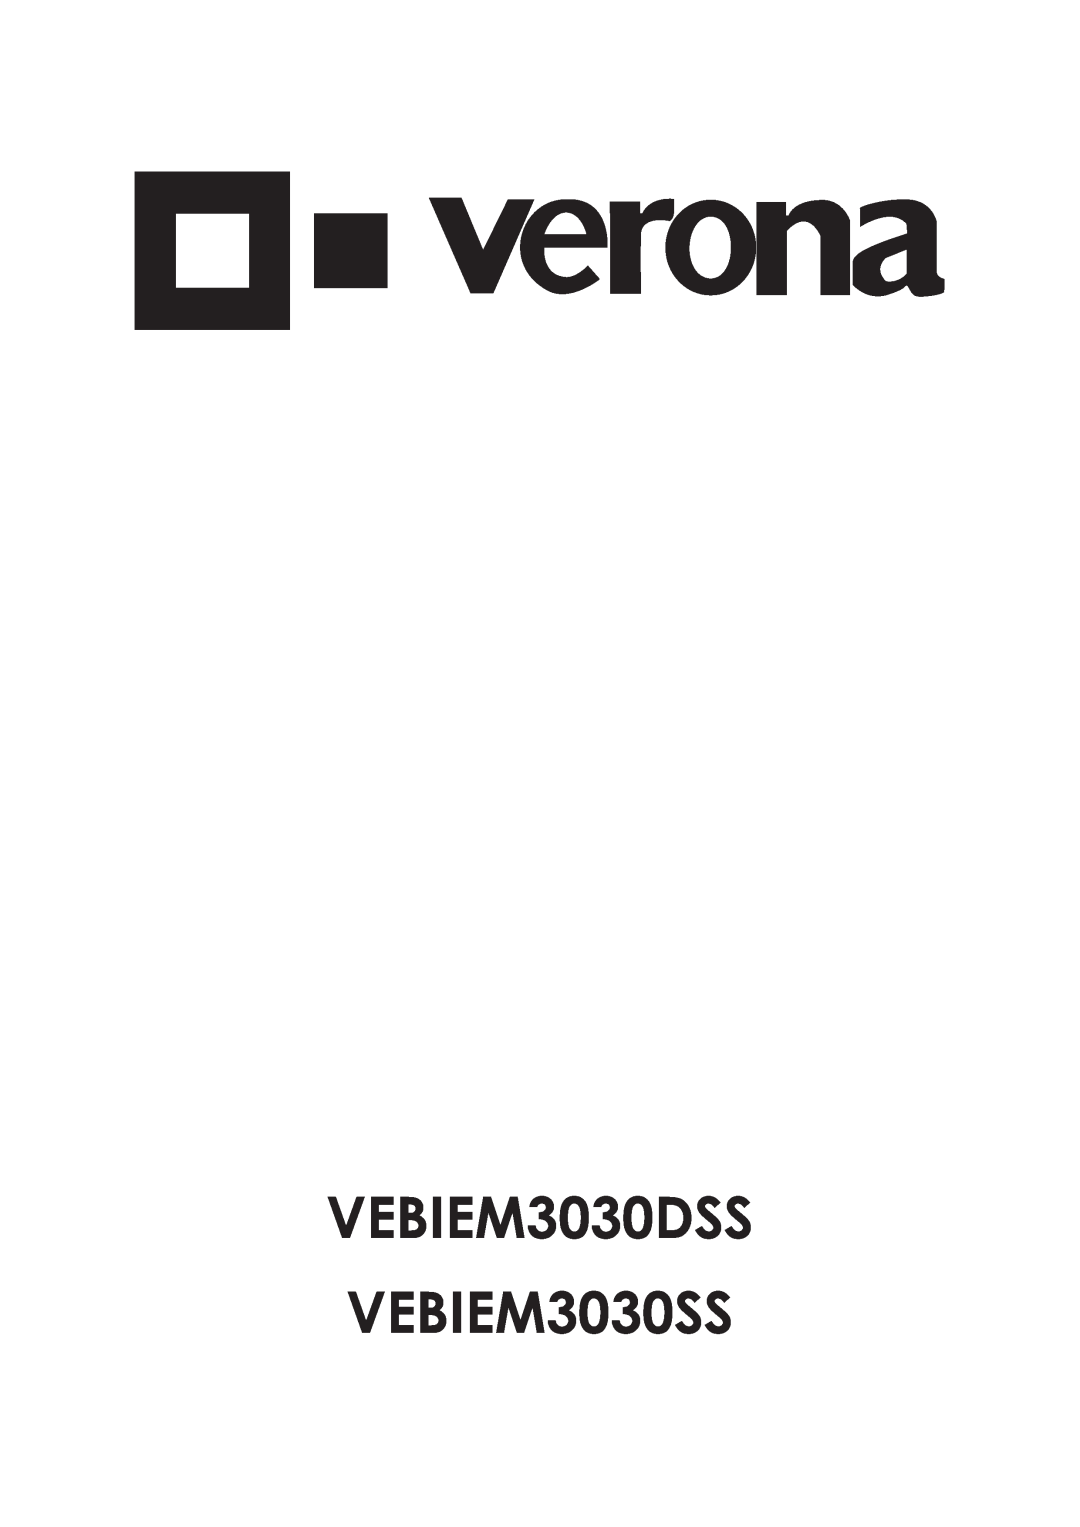 Verona VEBIEM3030DSS manual VEBIEM3030SS 